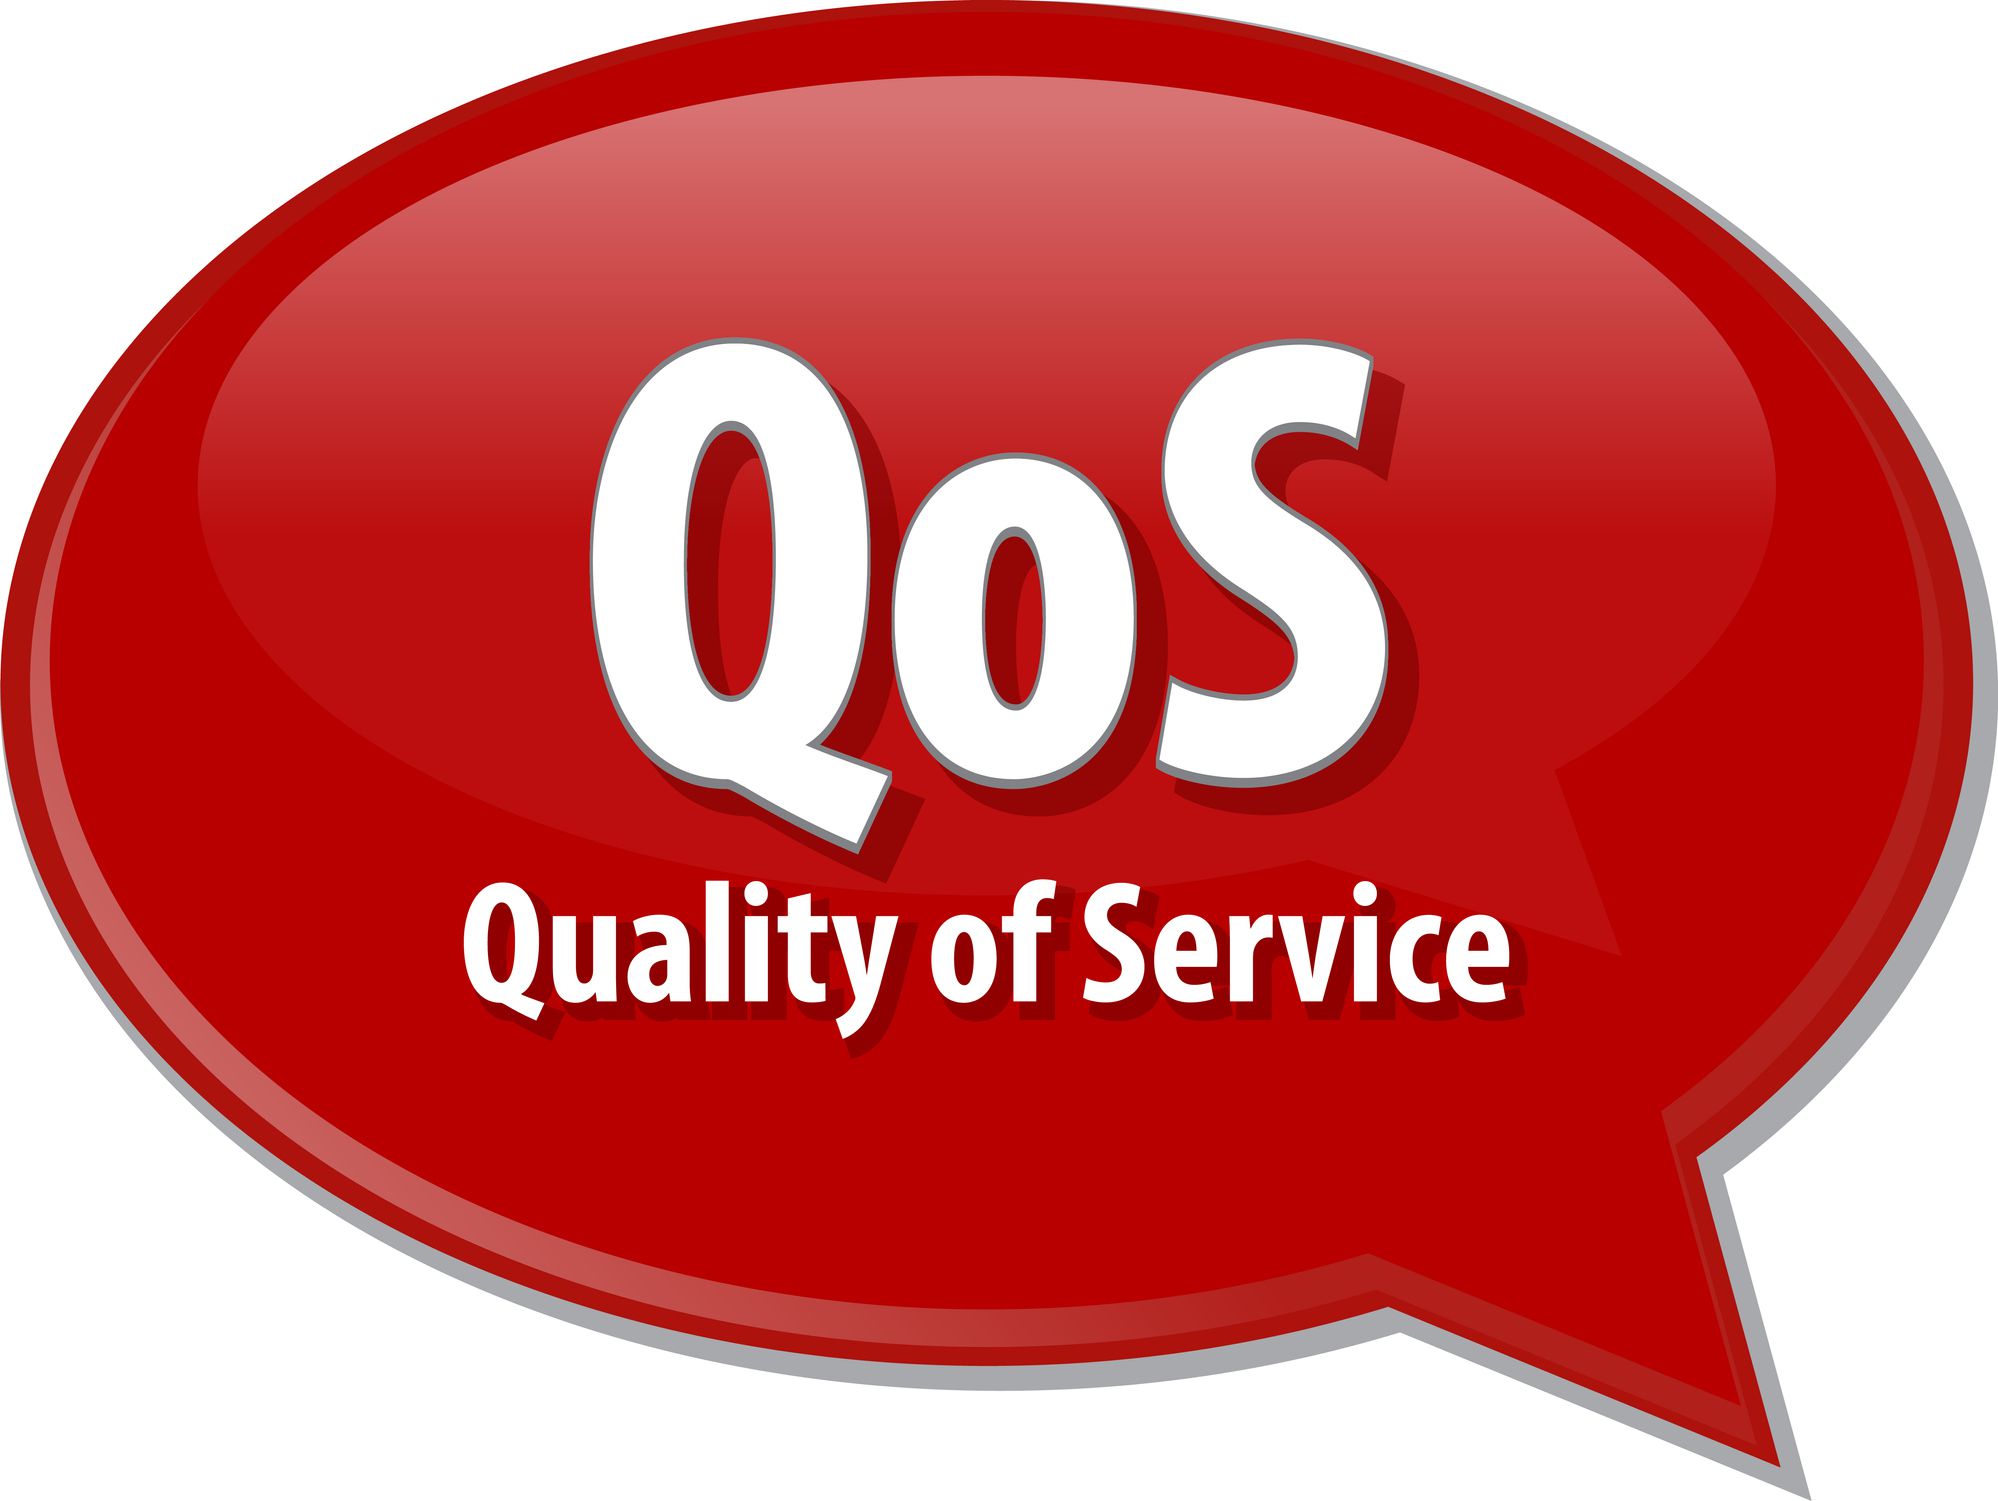 Balão de diálogo de qualidade de serviço Q0S